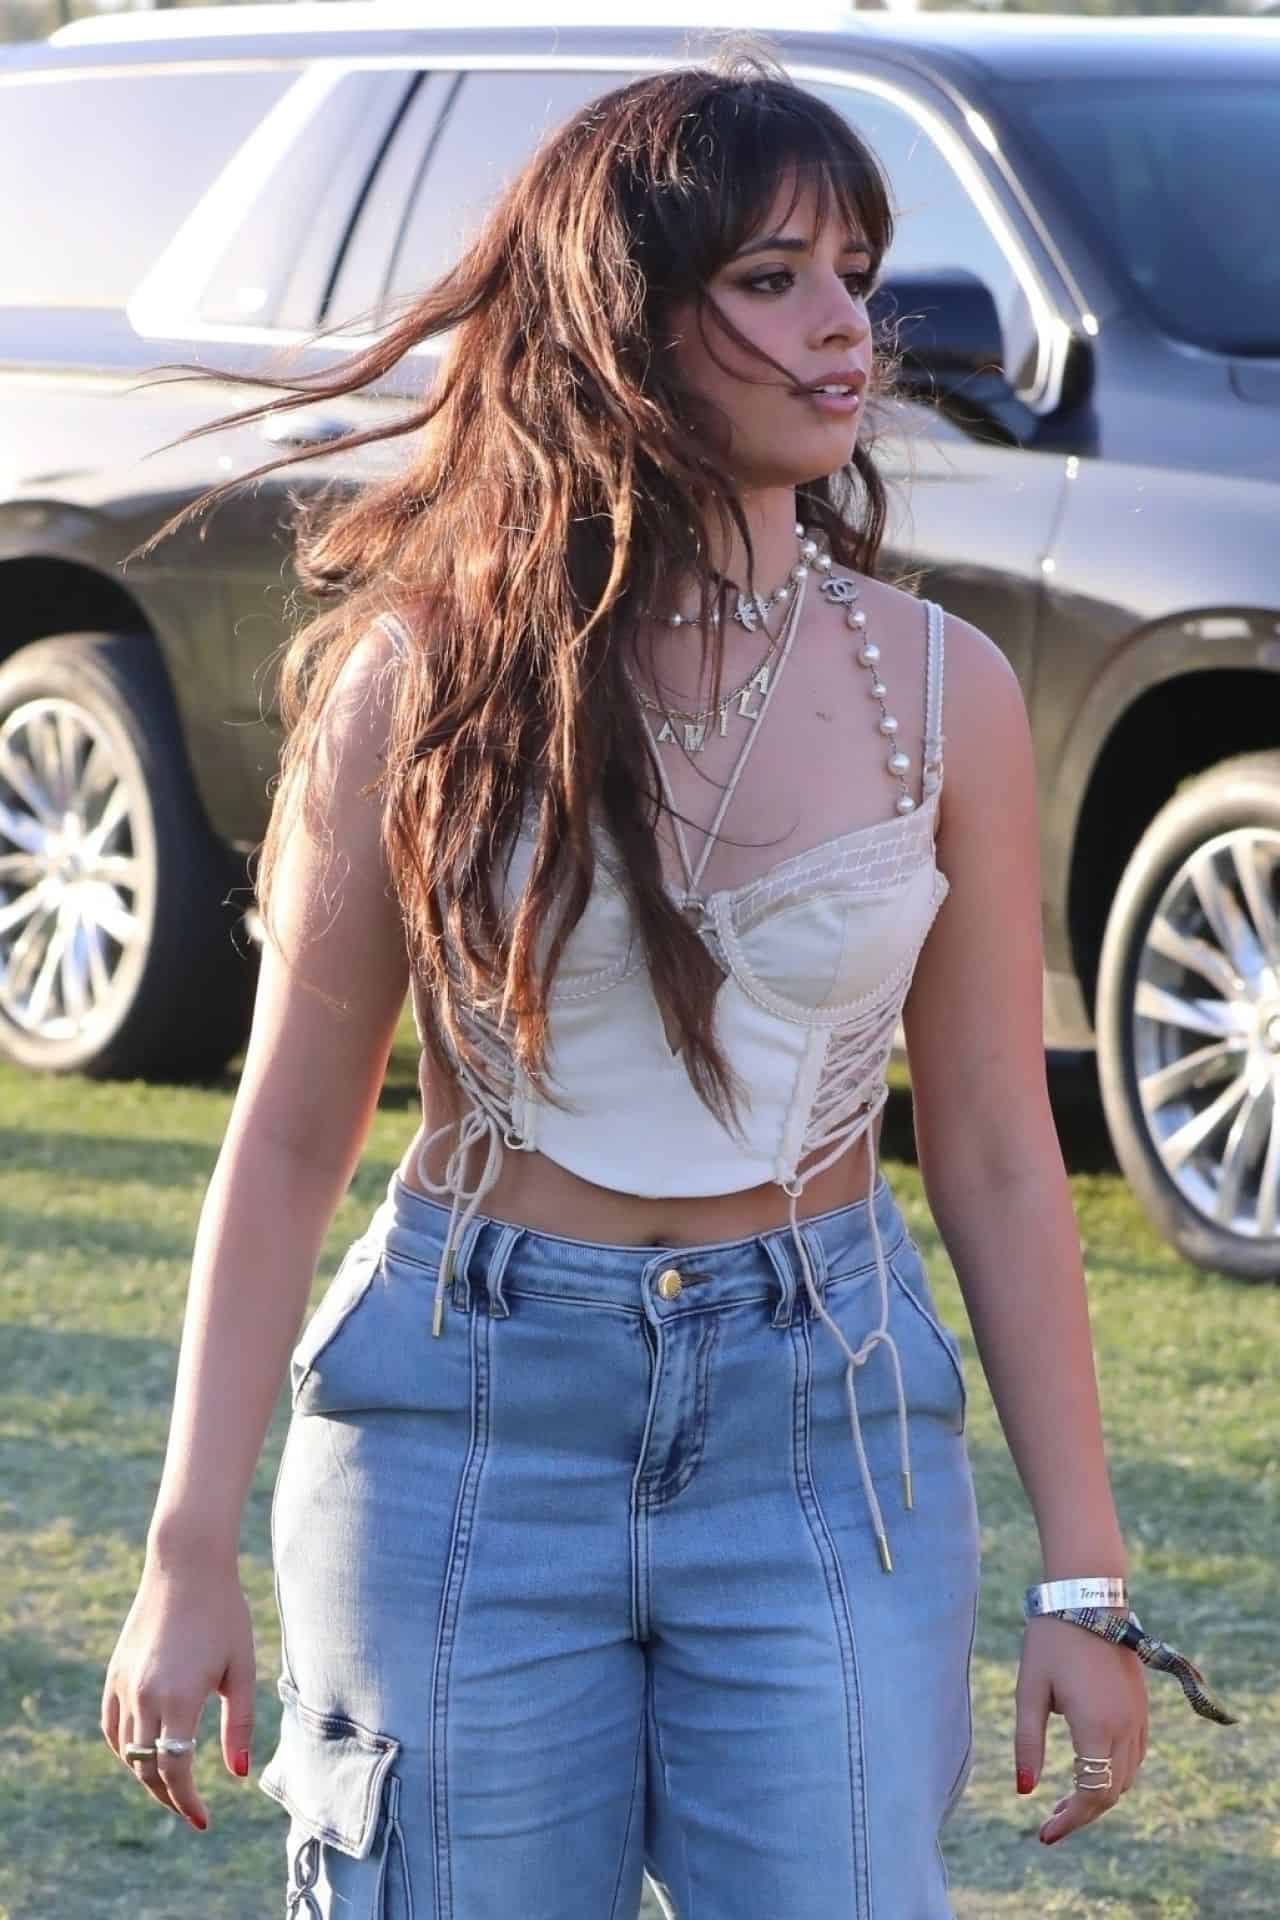 Camila Cabello Arrives at the 2023 Coachella Festival in Indio